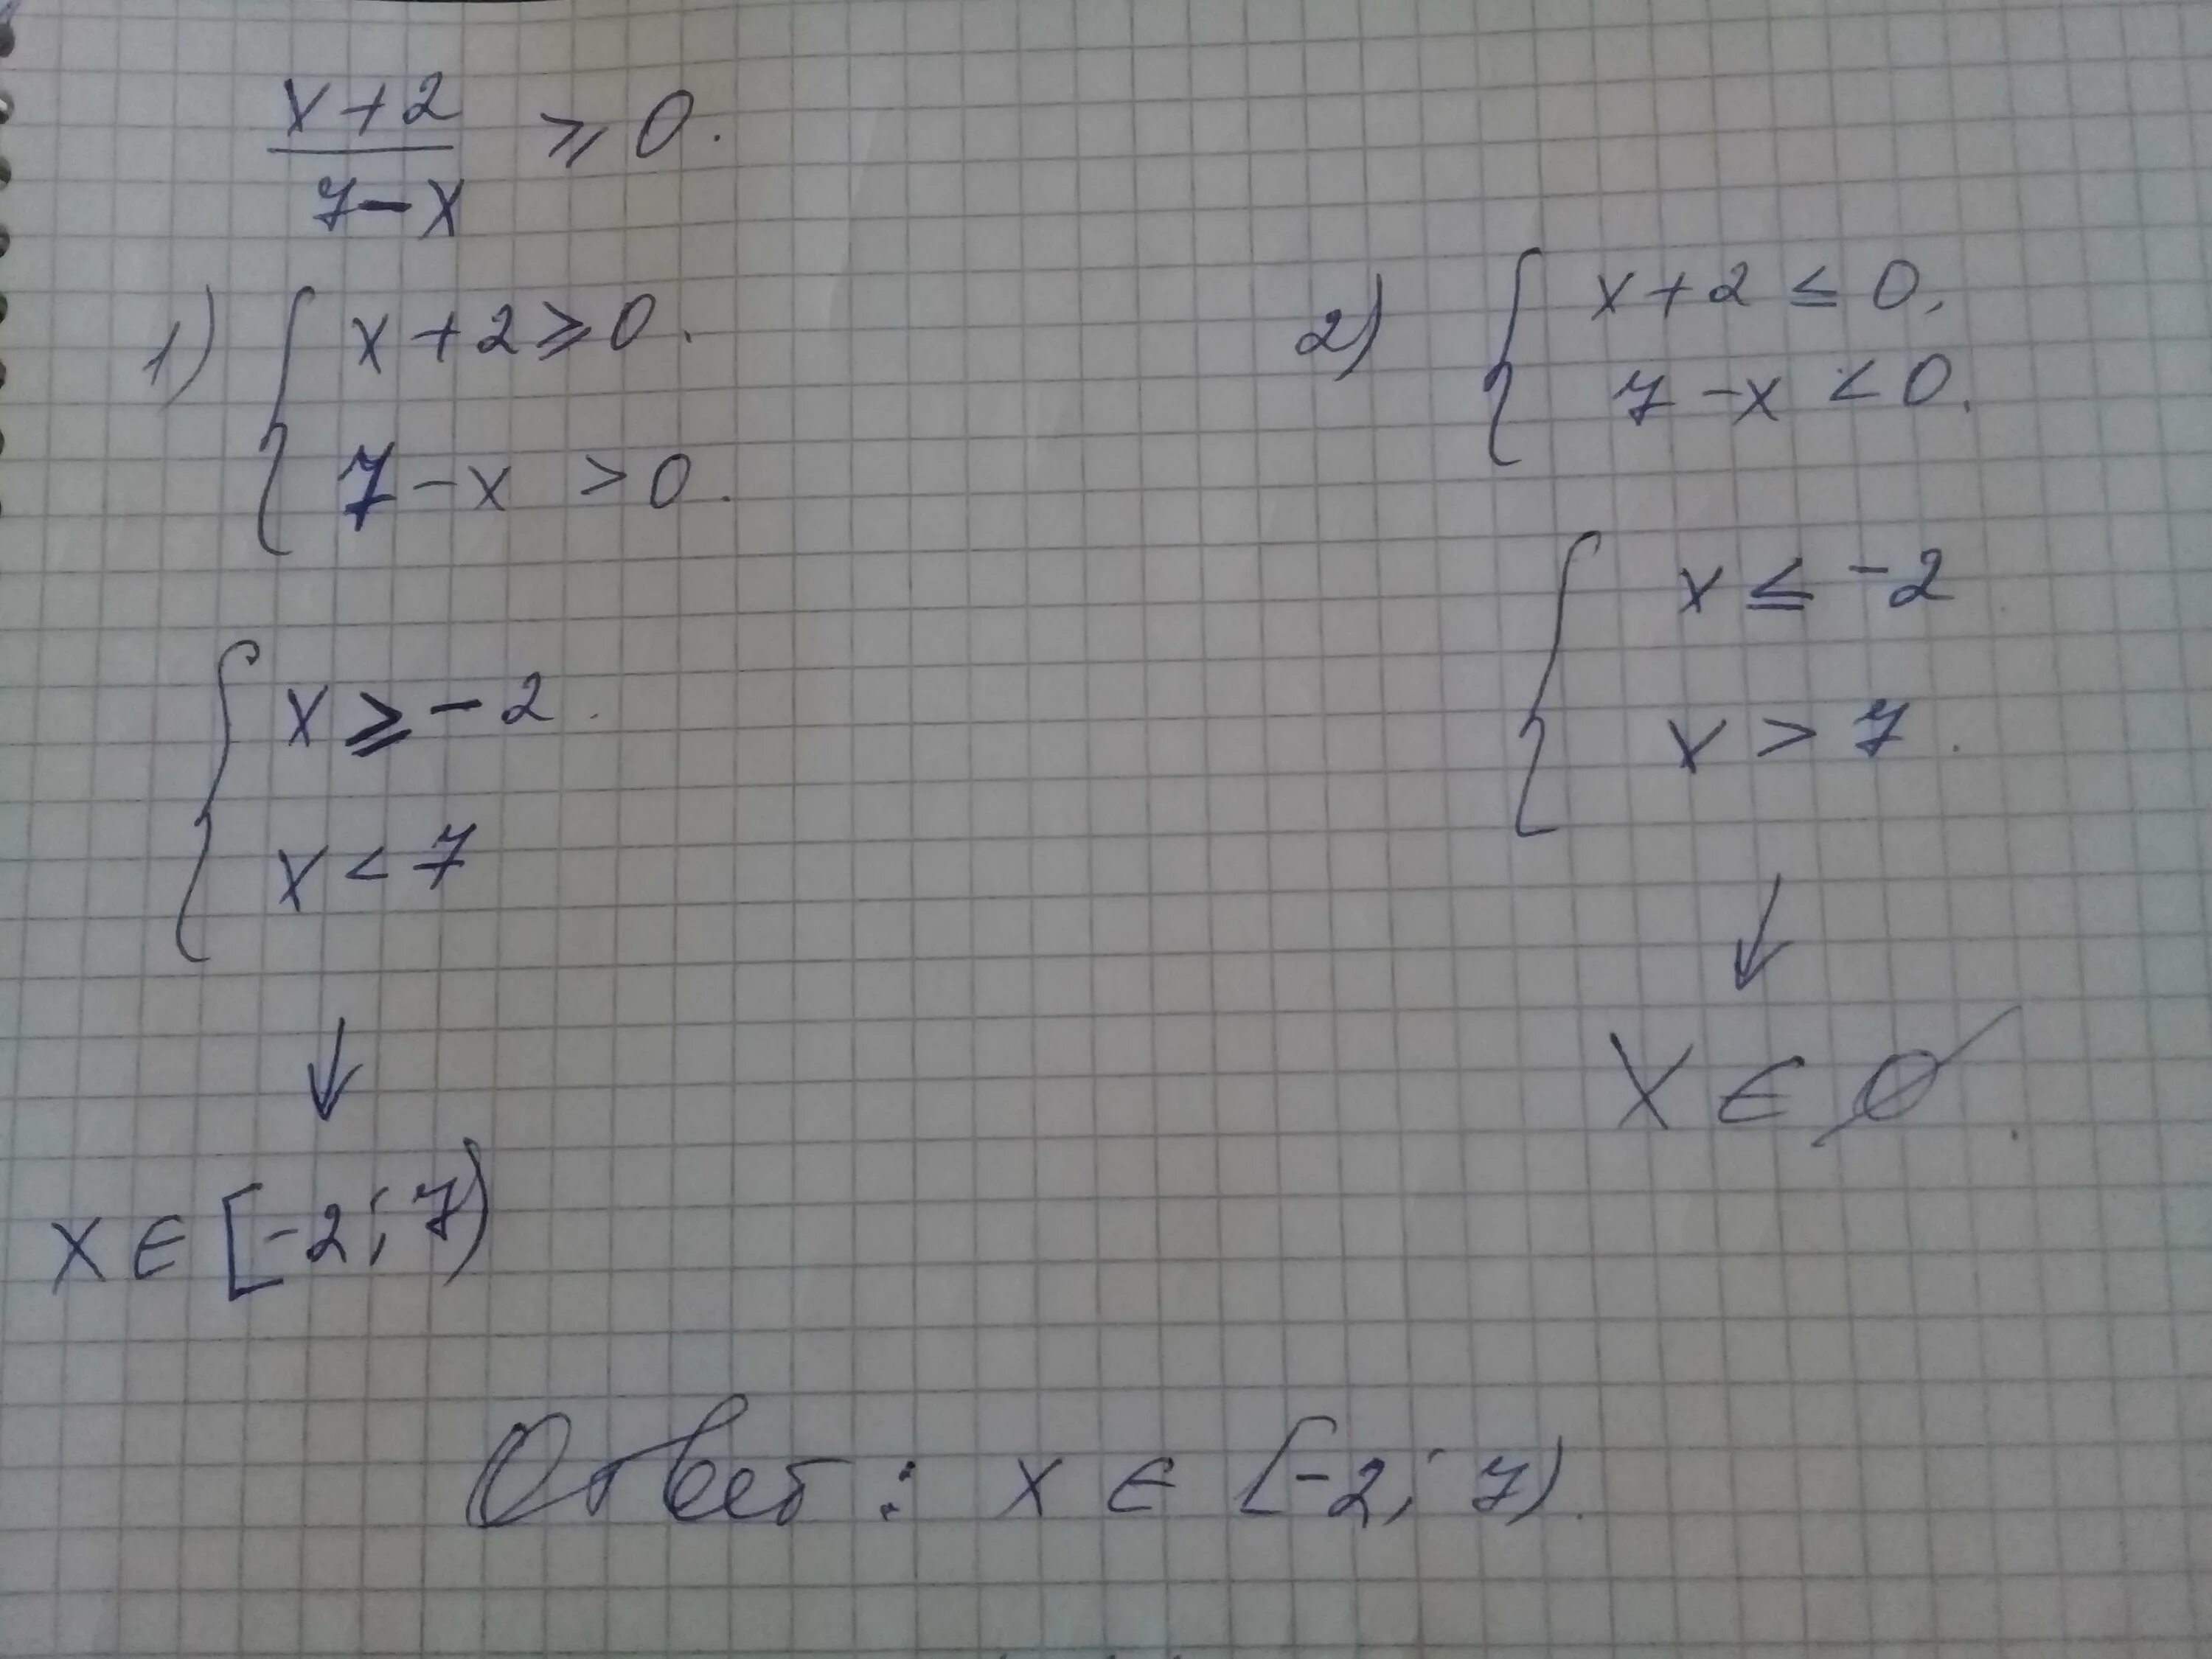 2х 7 2 ответ. X 2 7x 10 больше или равно нулю. 7x-x2 больше или равно 0. X больше или равно 0. 7x-x2 больше 0.